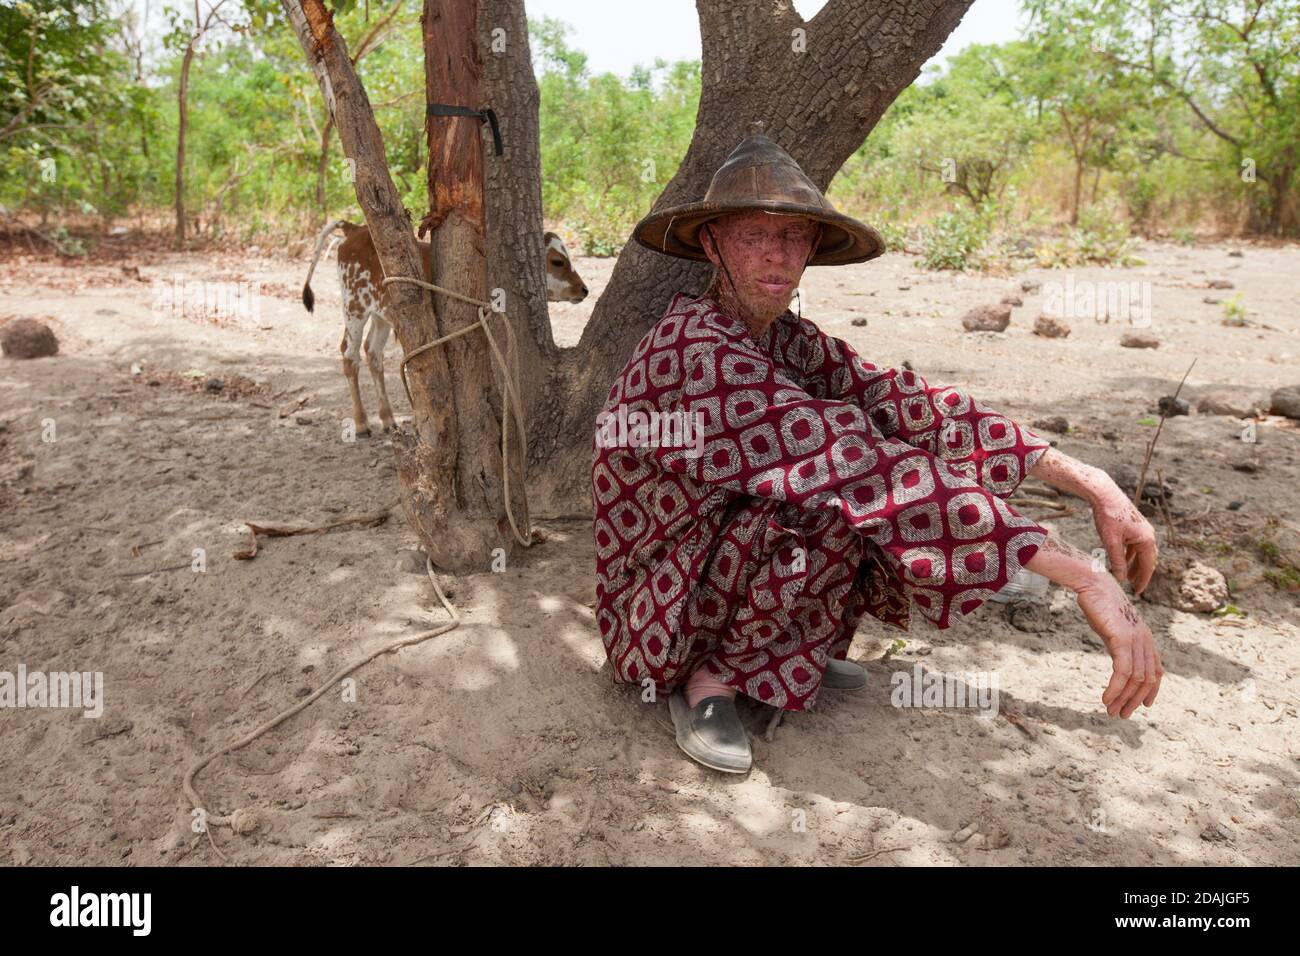 Delaba Koro, Dorf 60 km von Selingue, Mali, 27. April 2015; Ibrahim Boly, 46, Fulani Hirte aus Bougouni, kam wegen guter Weide hierher. Er baut auch Baumwolle und Mais an. Er hat die meisten seiner Tiere an die Grenze geschickt, weil es jetzt an sauberem Wasser mangelt und Insekten das Futter infizieren. Sie werden in 4 Monaten wiederkommen. Er hat das kleine Kalb bei sich behalten, weil es erst einen Monat alt und zu jung ist, um die Reise zu machen. Stockfoto